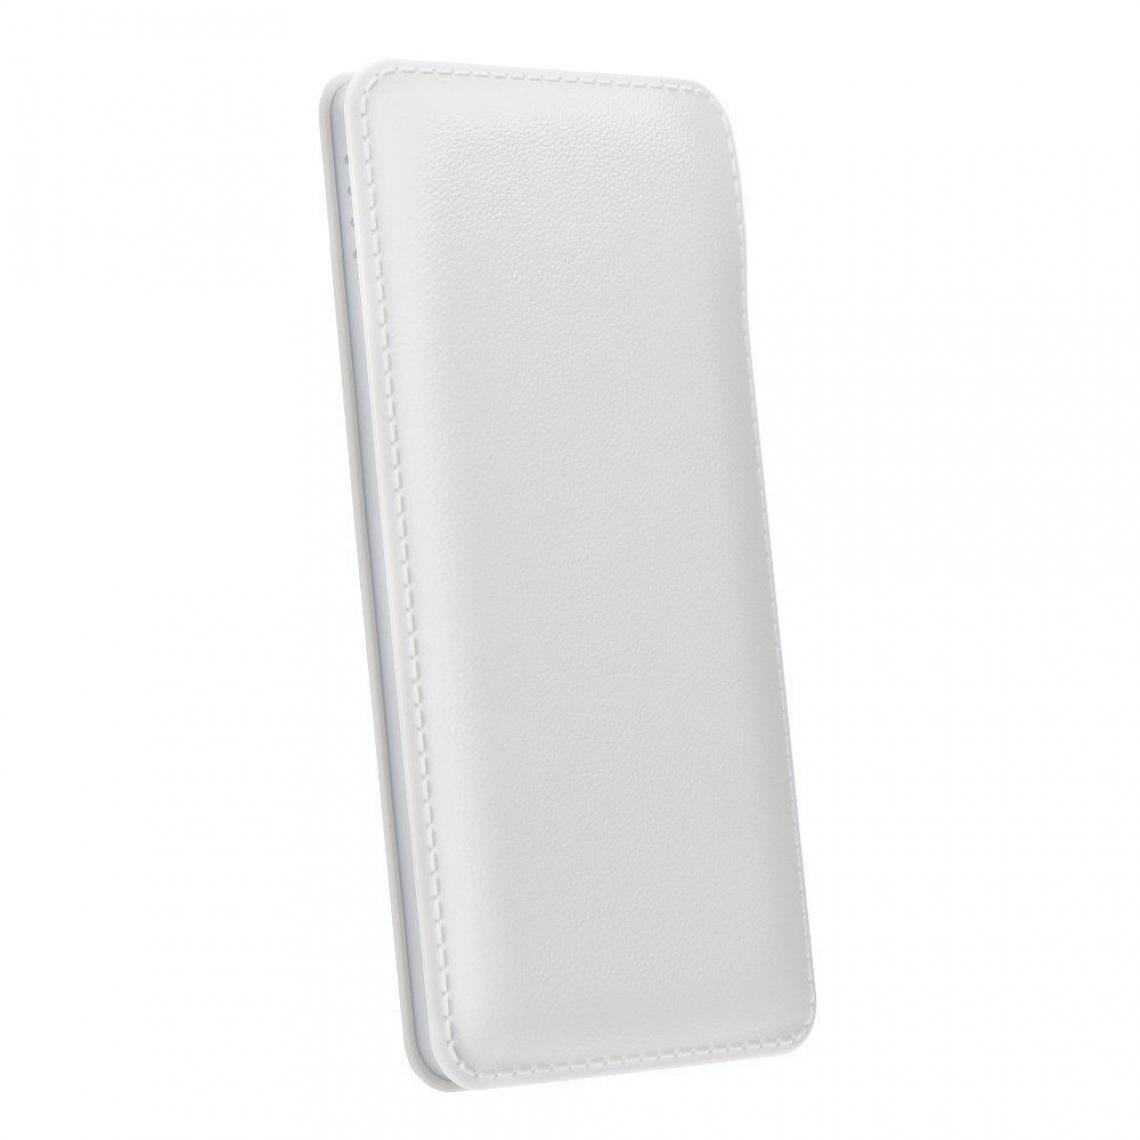 Ozzzo - Chargeur batterie externe 20000 mAh powerbank ozzzo blanc pour Samsung Galaxy Note 10 - Autres accessoires smartphone